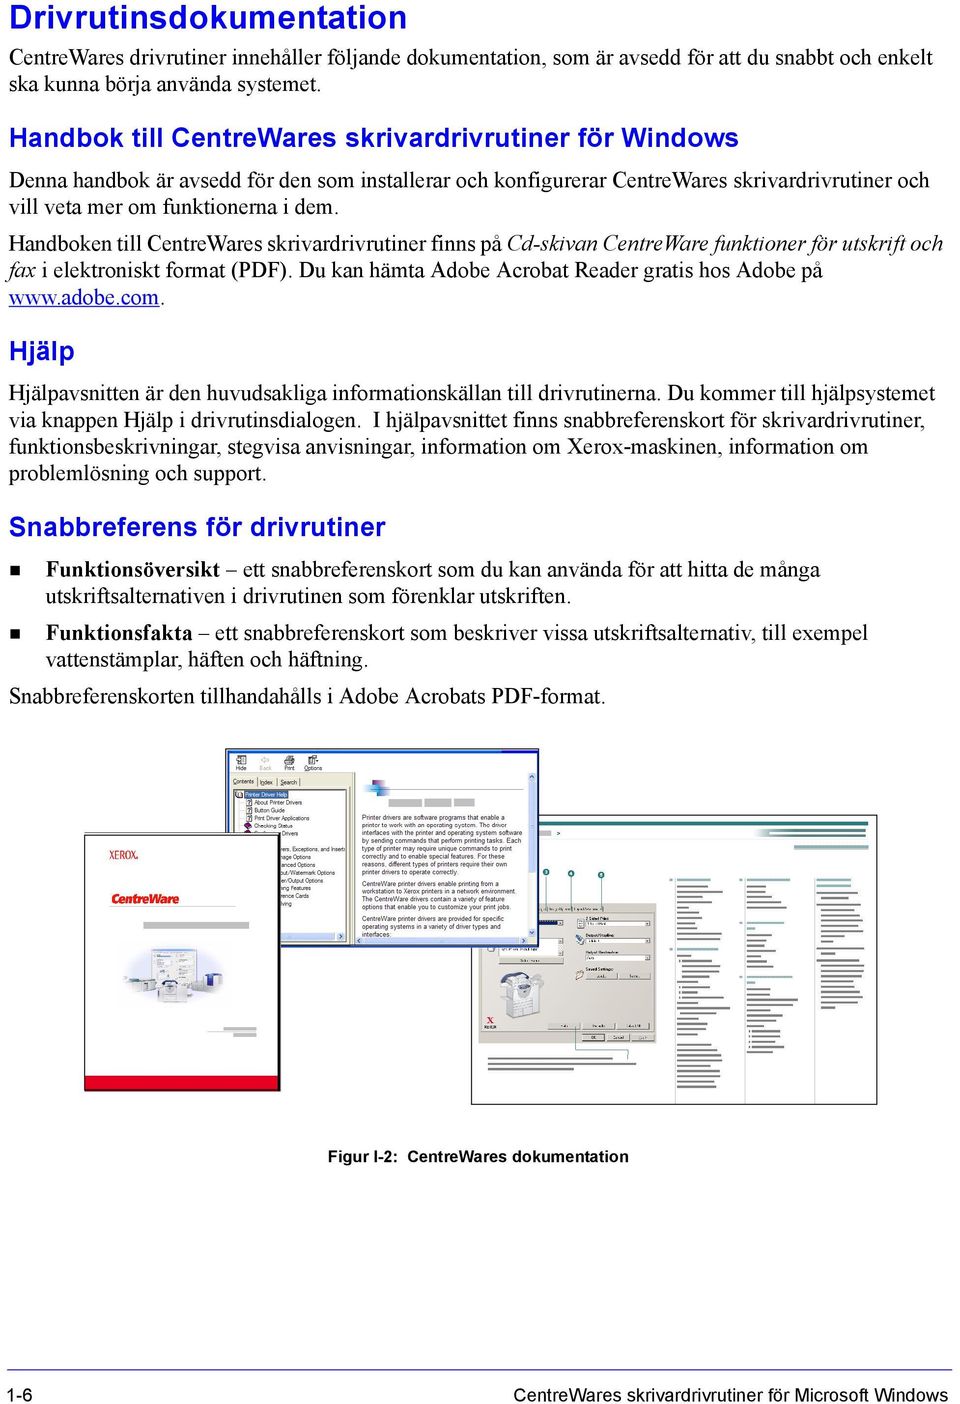 Handboken till CentreWares skrivardrivrutiner finns på Cd-skivan CentreWare funktioner för utskrift och fax i elektroniskt format (PDF). Du kan hämta Adobe Acrobat Reader gratis hos Adobe på www.